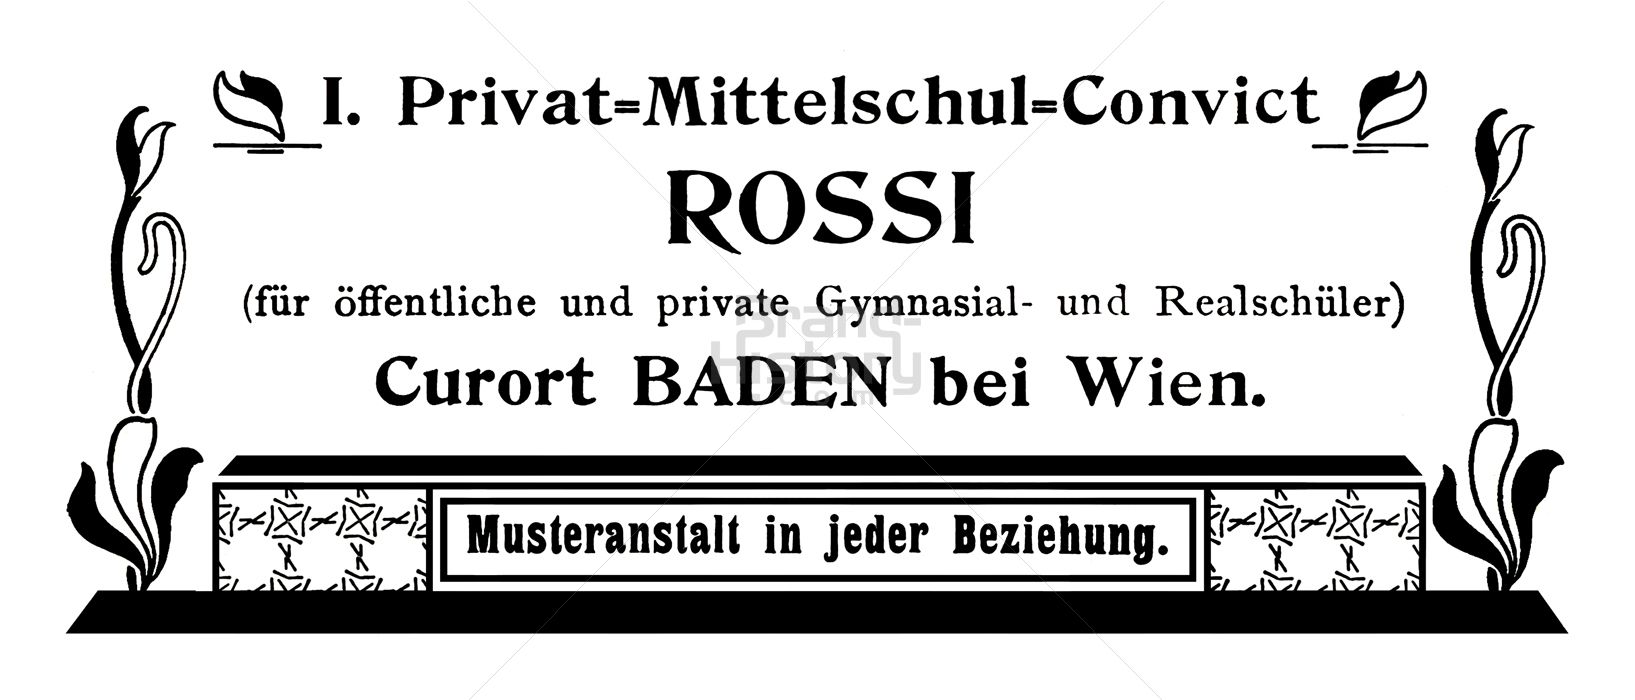 I. Privat-Mittelschul-Convict ROSSI